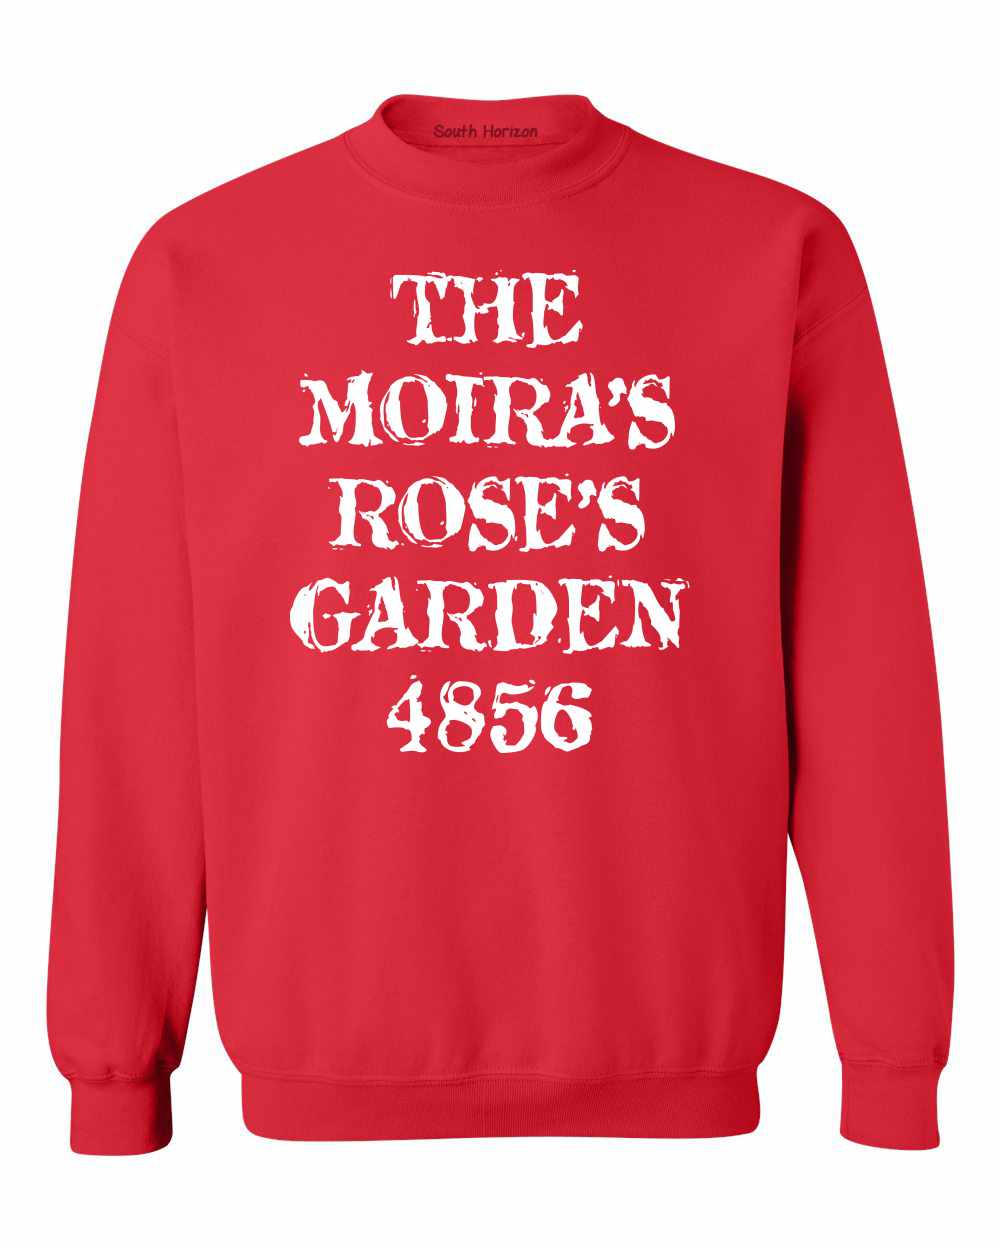 The Moiras Roses Garden 4856 on SweatShirt (#1052-11)